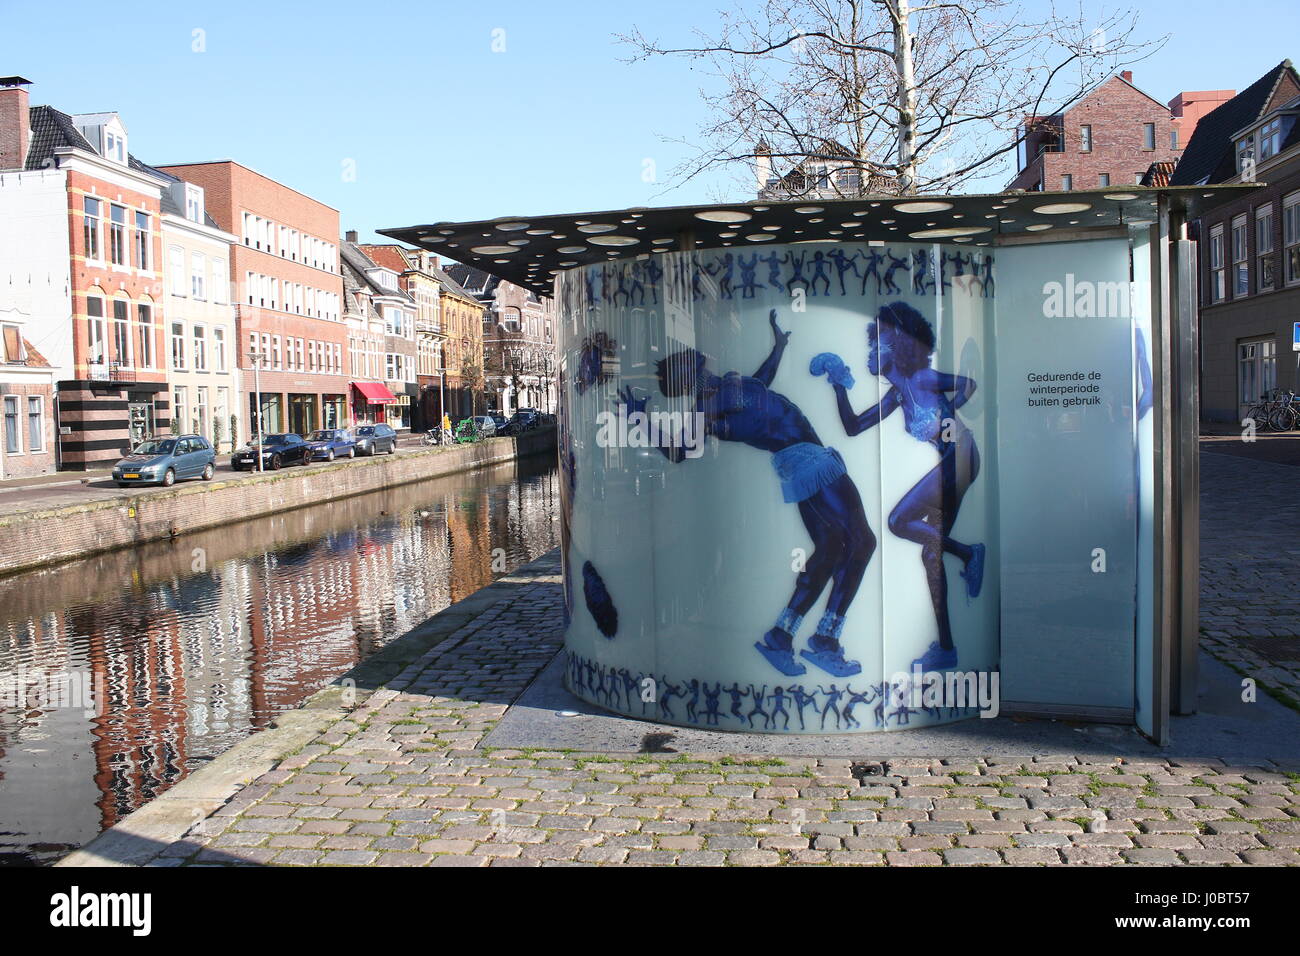 Toilettes publiques conçu par l'architecte néerlandais Rem Koolhaas (OMA) & photographe Erwin Olaf, à Reitemakersrijge canal dans Groningen, Pays-Bas. Banque D'Images